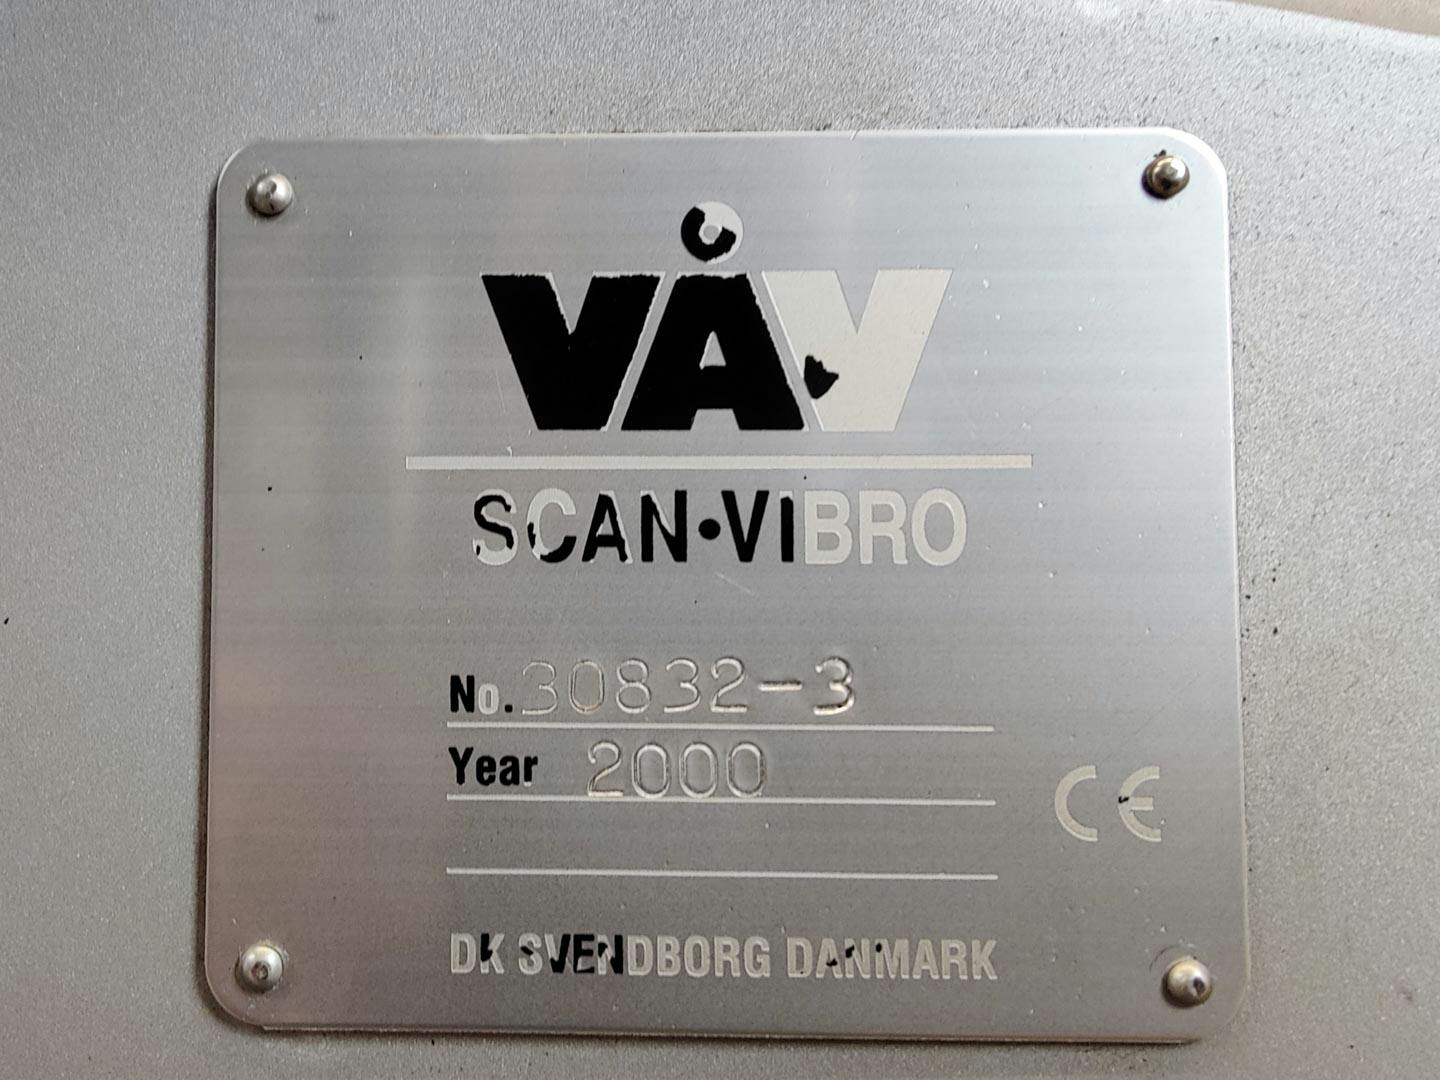 VAV Scan-Vibro - Vibro setaccio - image 14